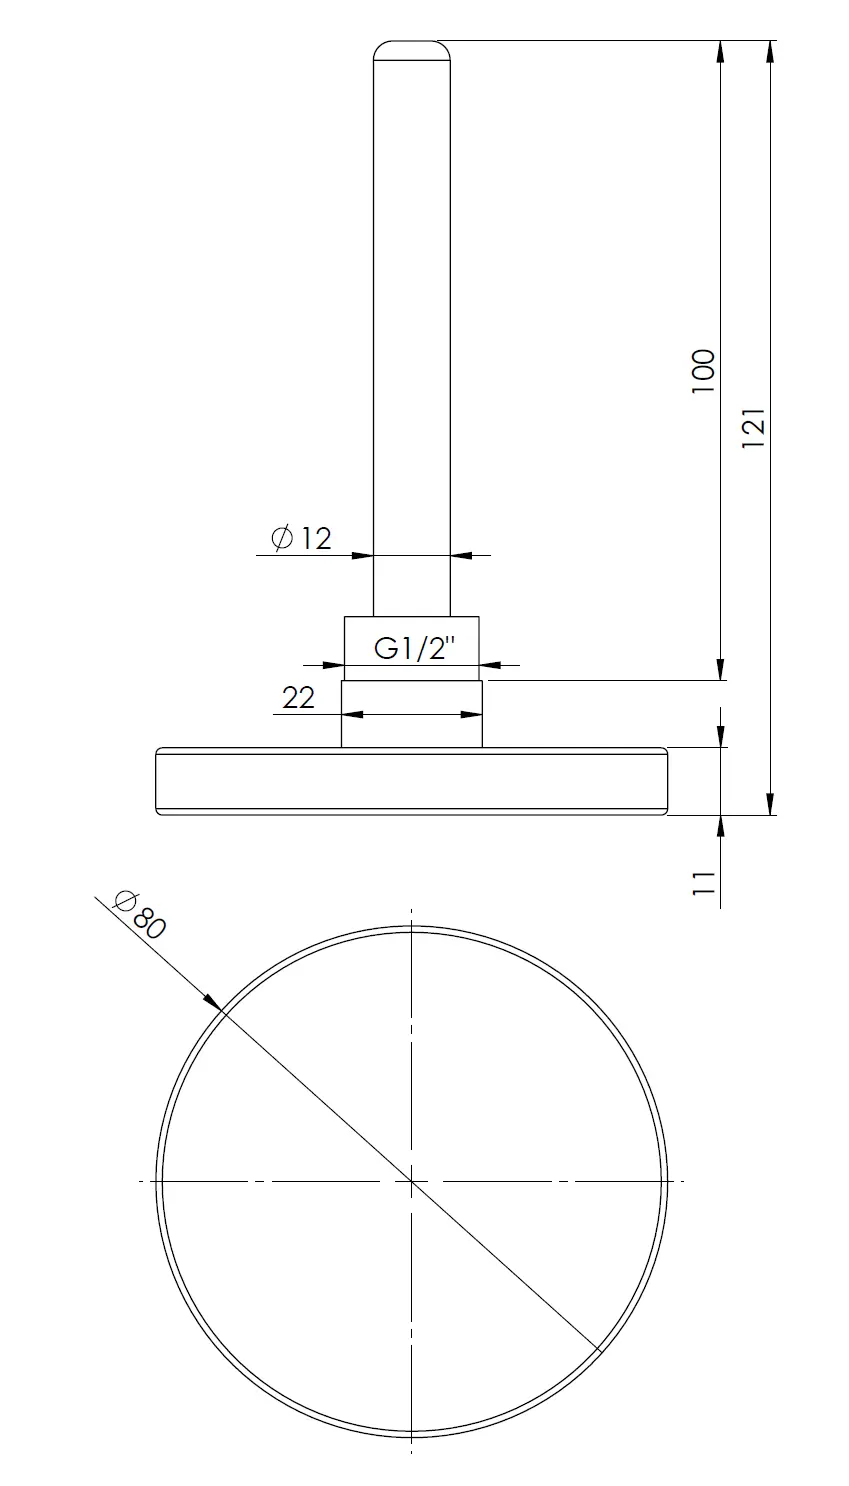 Termometr bimetaliczny BiTh 63, fi63 mm, 0÷120°C, L 100 mm, G1/2", ax, kl. 2 - budowa